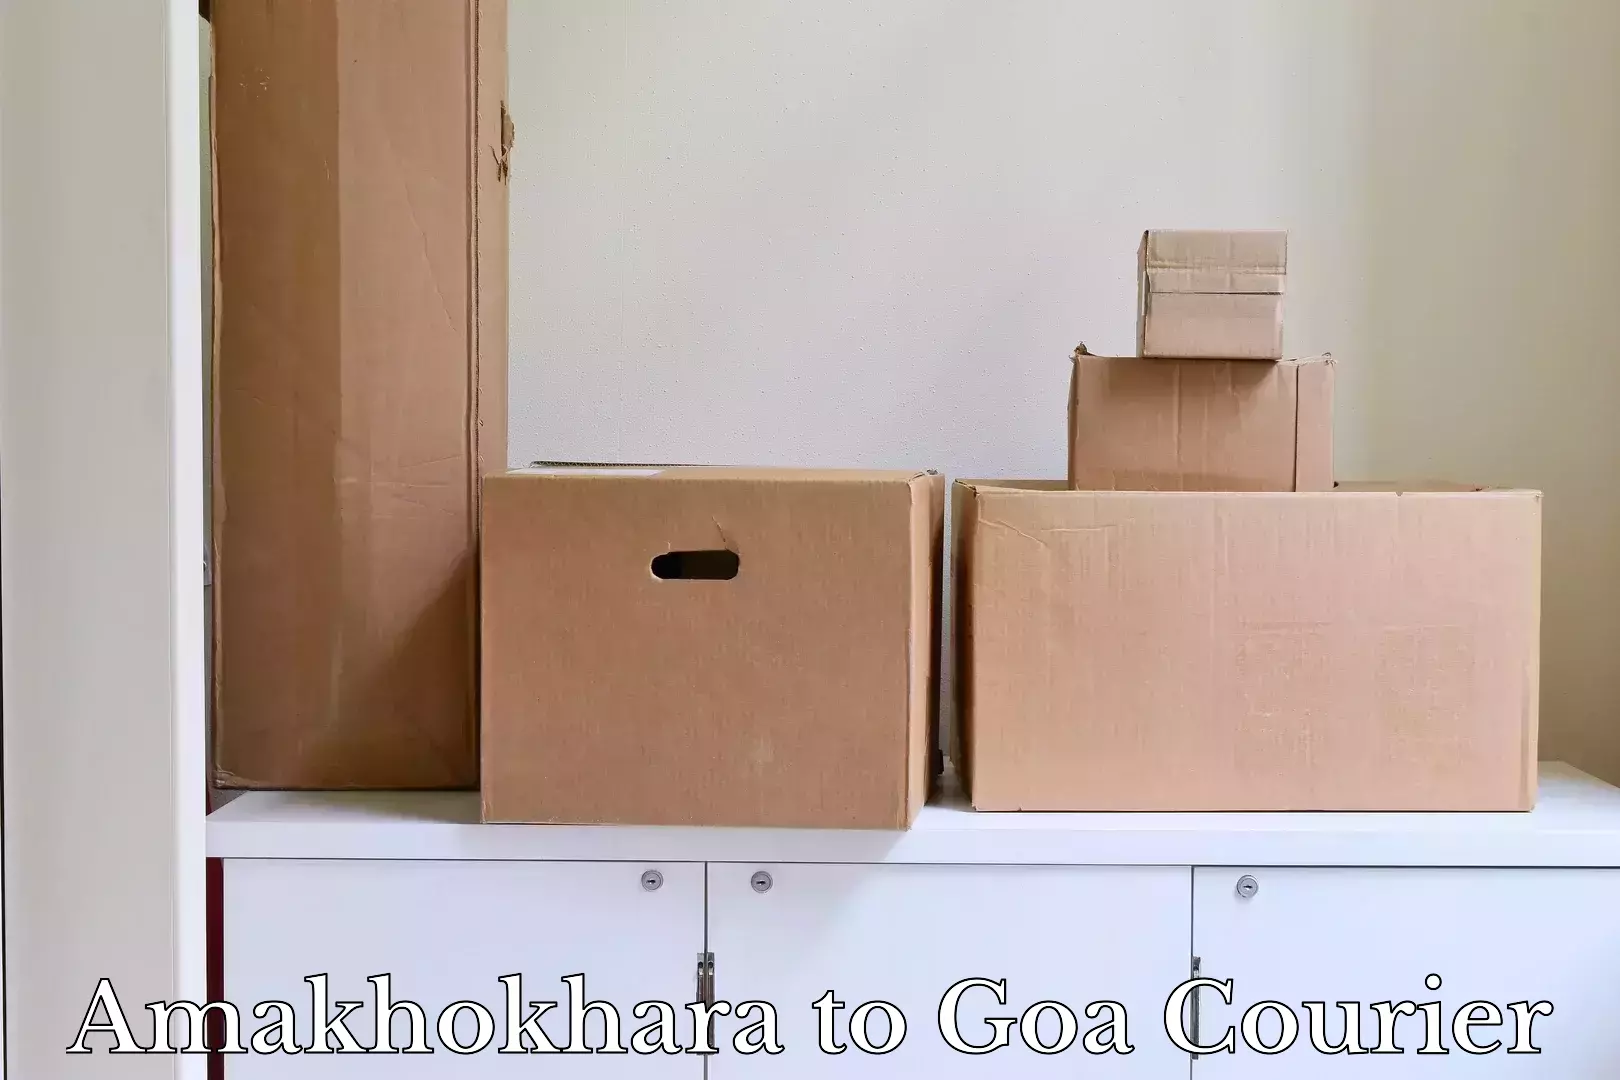 Luggage shipping service Amakhokhara to Goa University